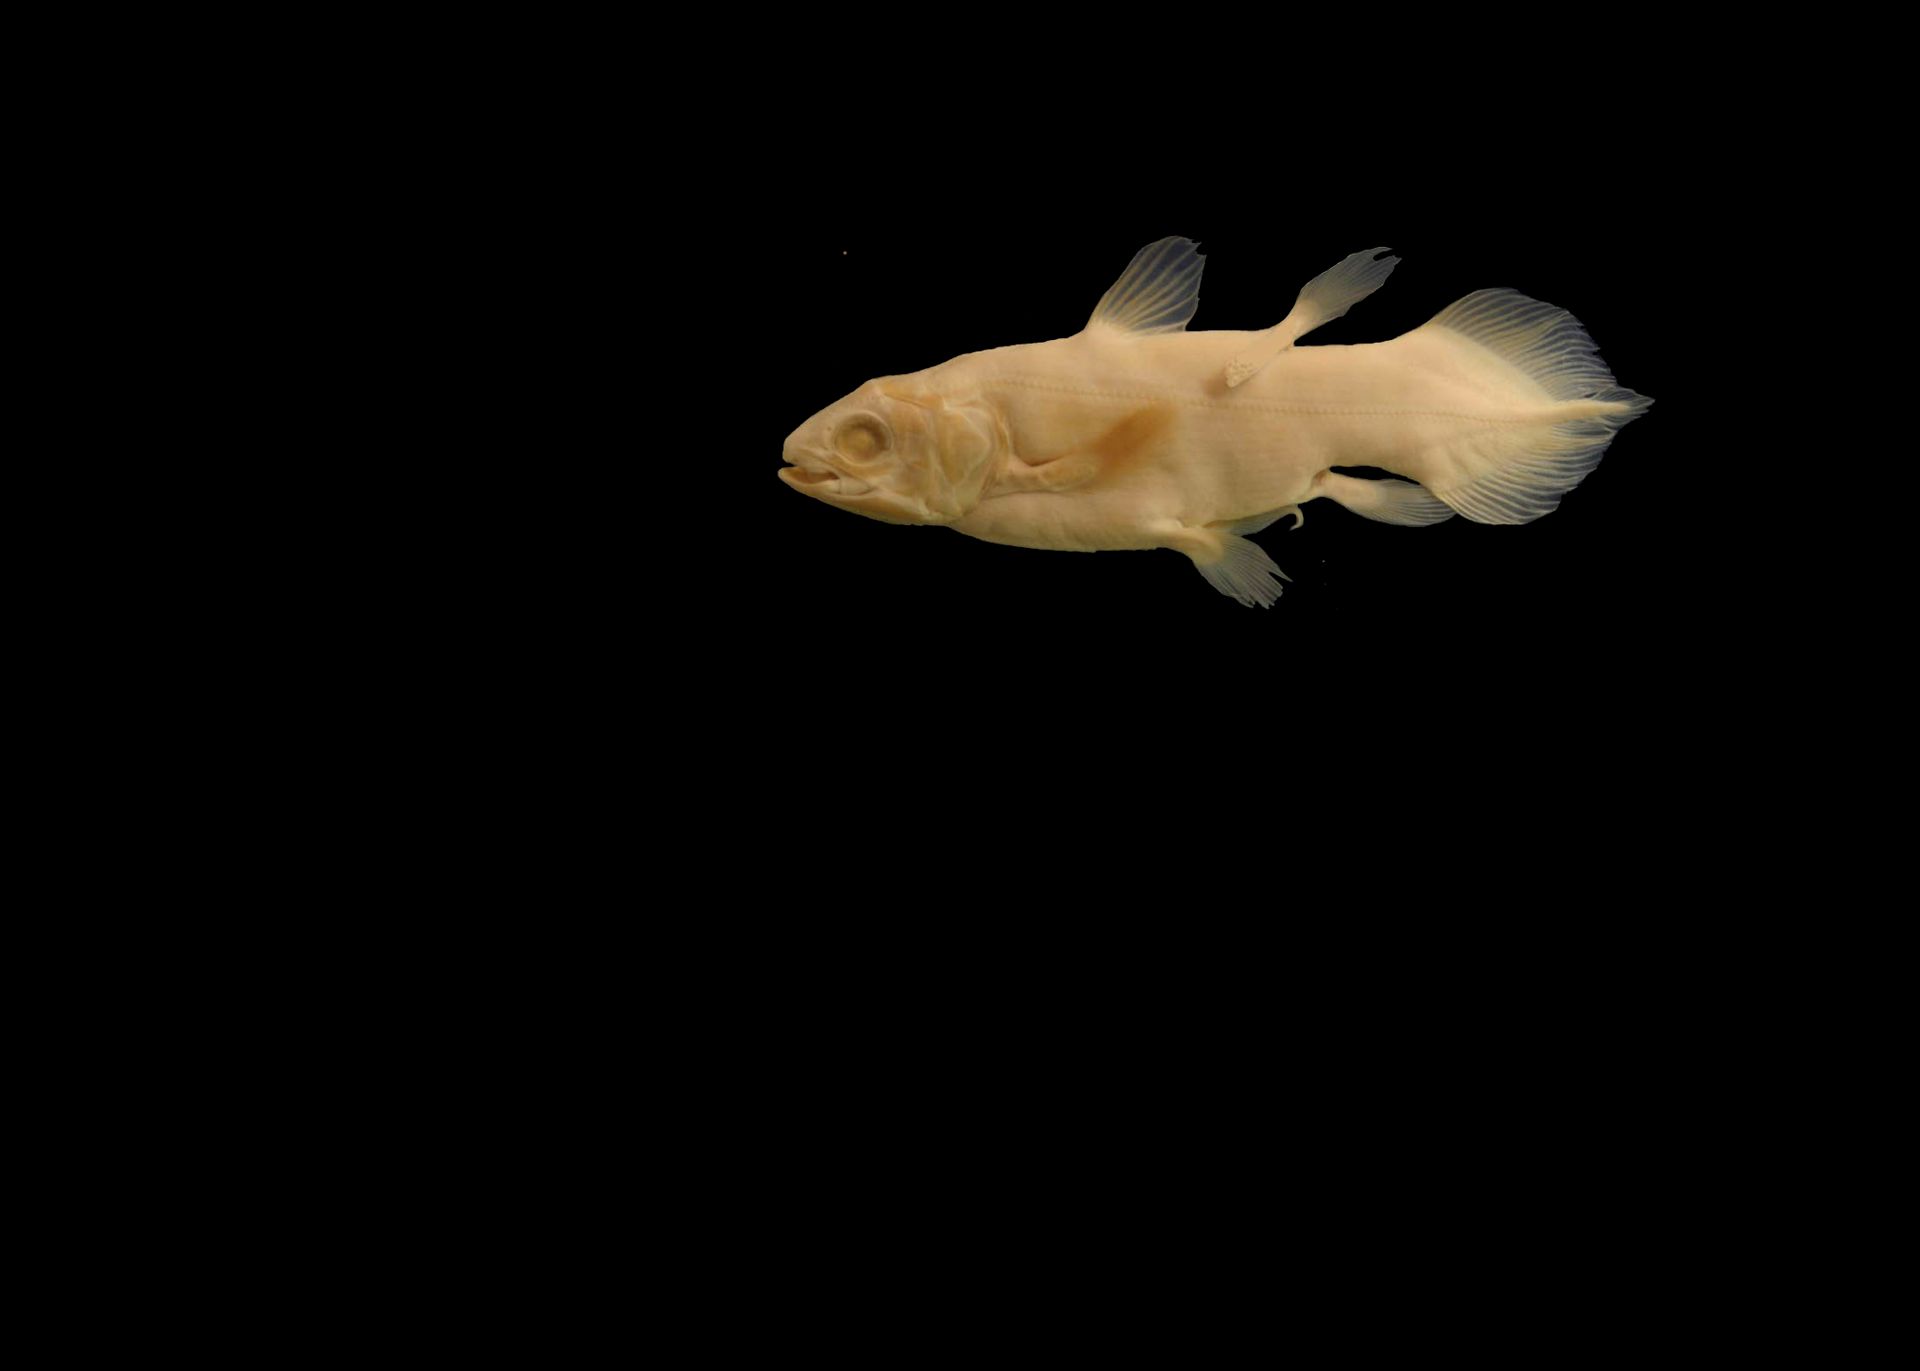 Kvastfinnefisken har lysegult skinn og nesten gjennomsiktige finner, mot en svart bakgrunn.